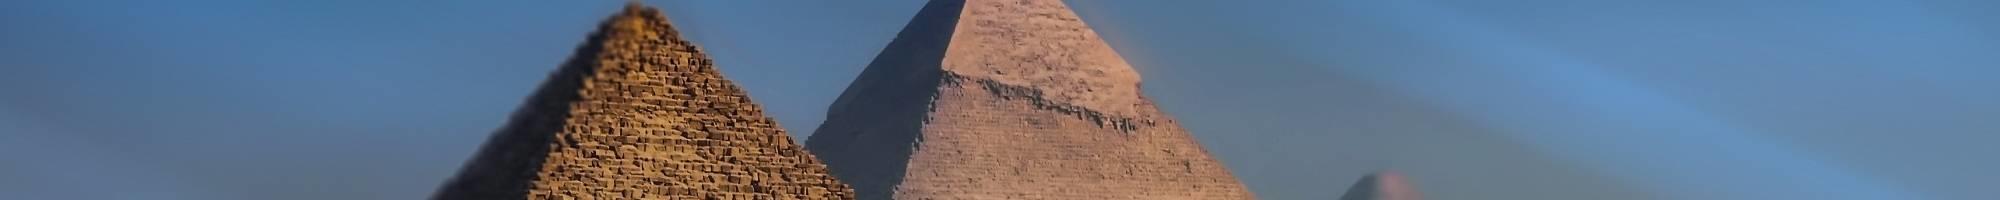 Ägypten - Pyramiden von Gizeh (Panorama)